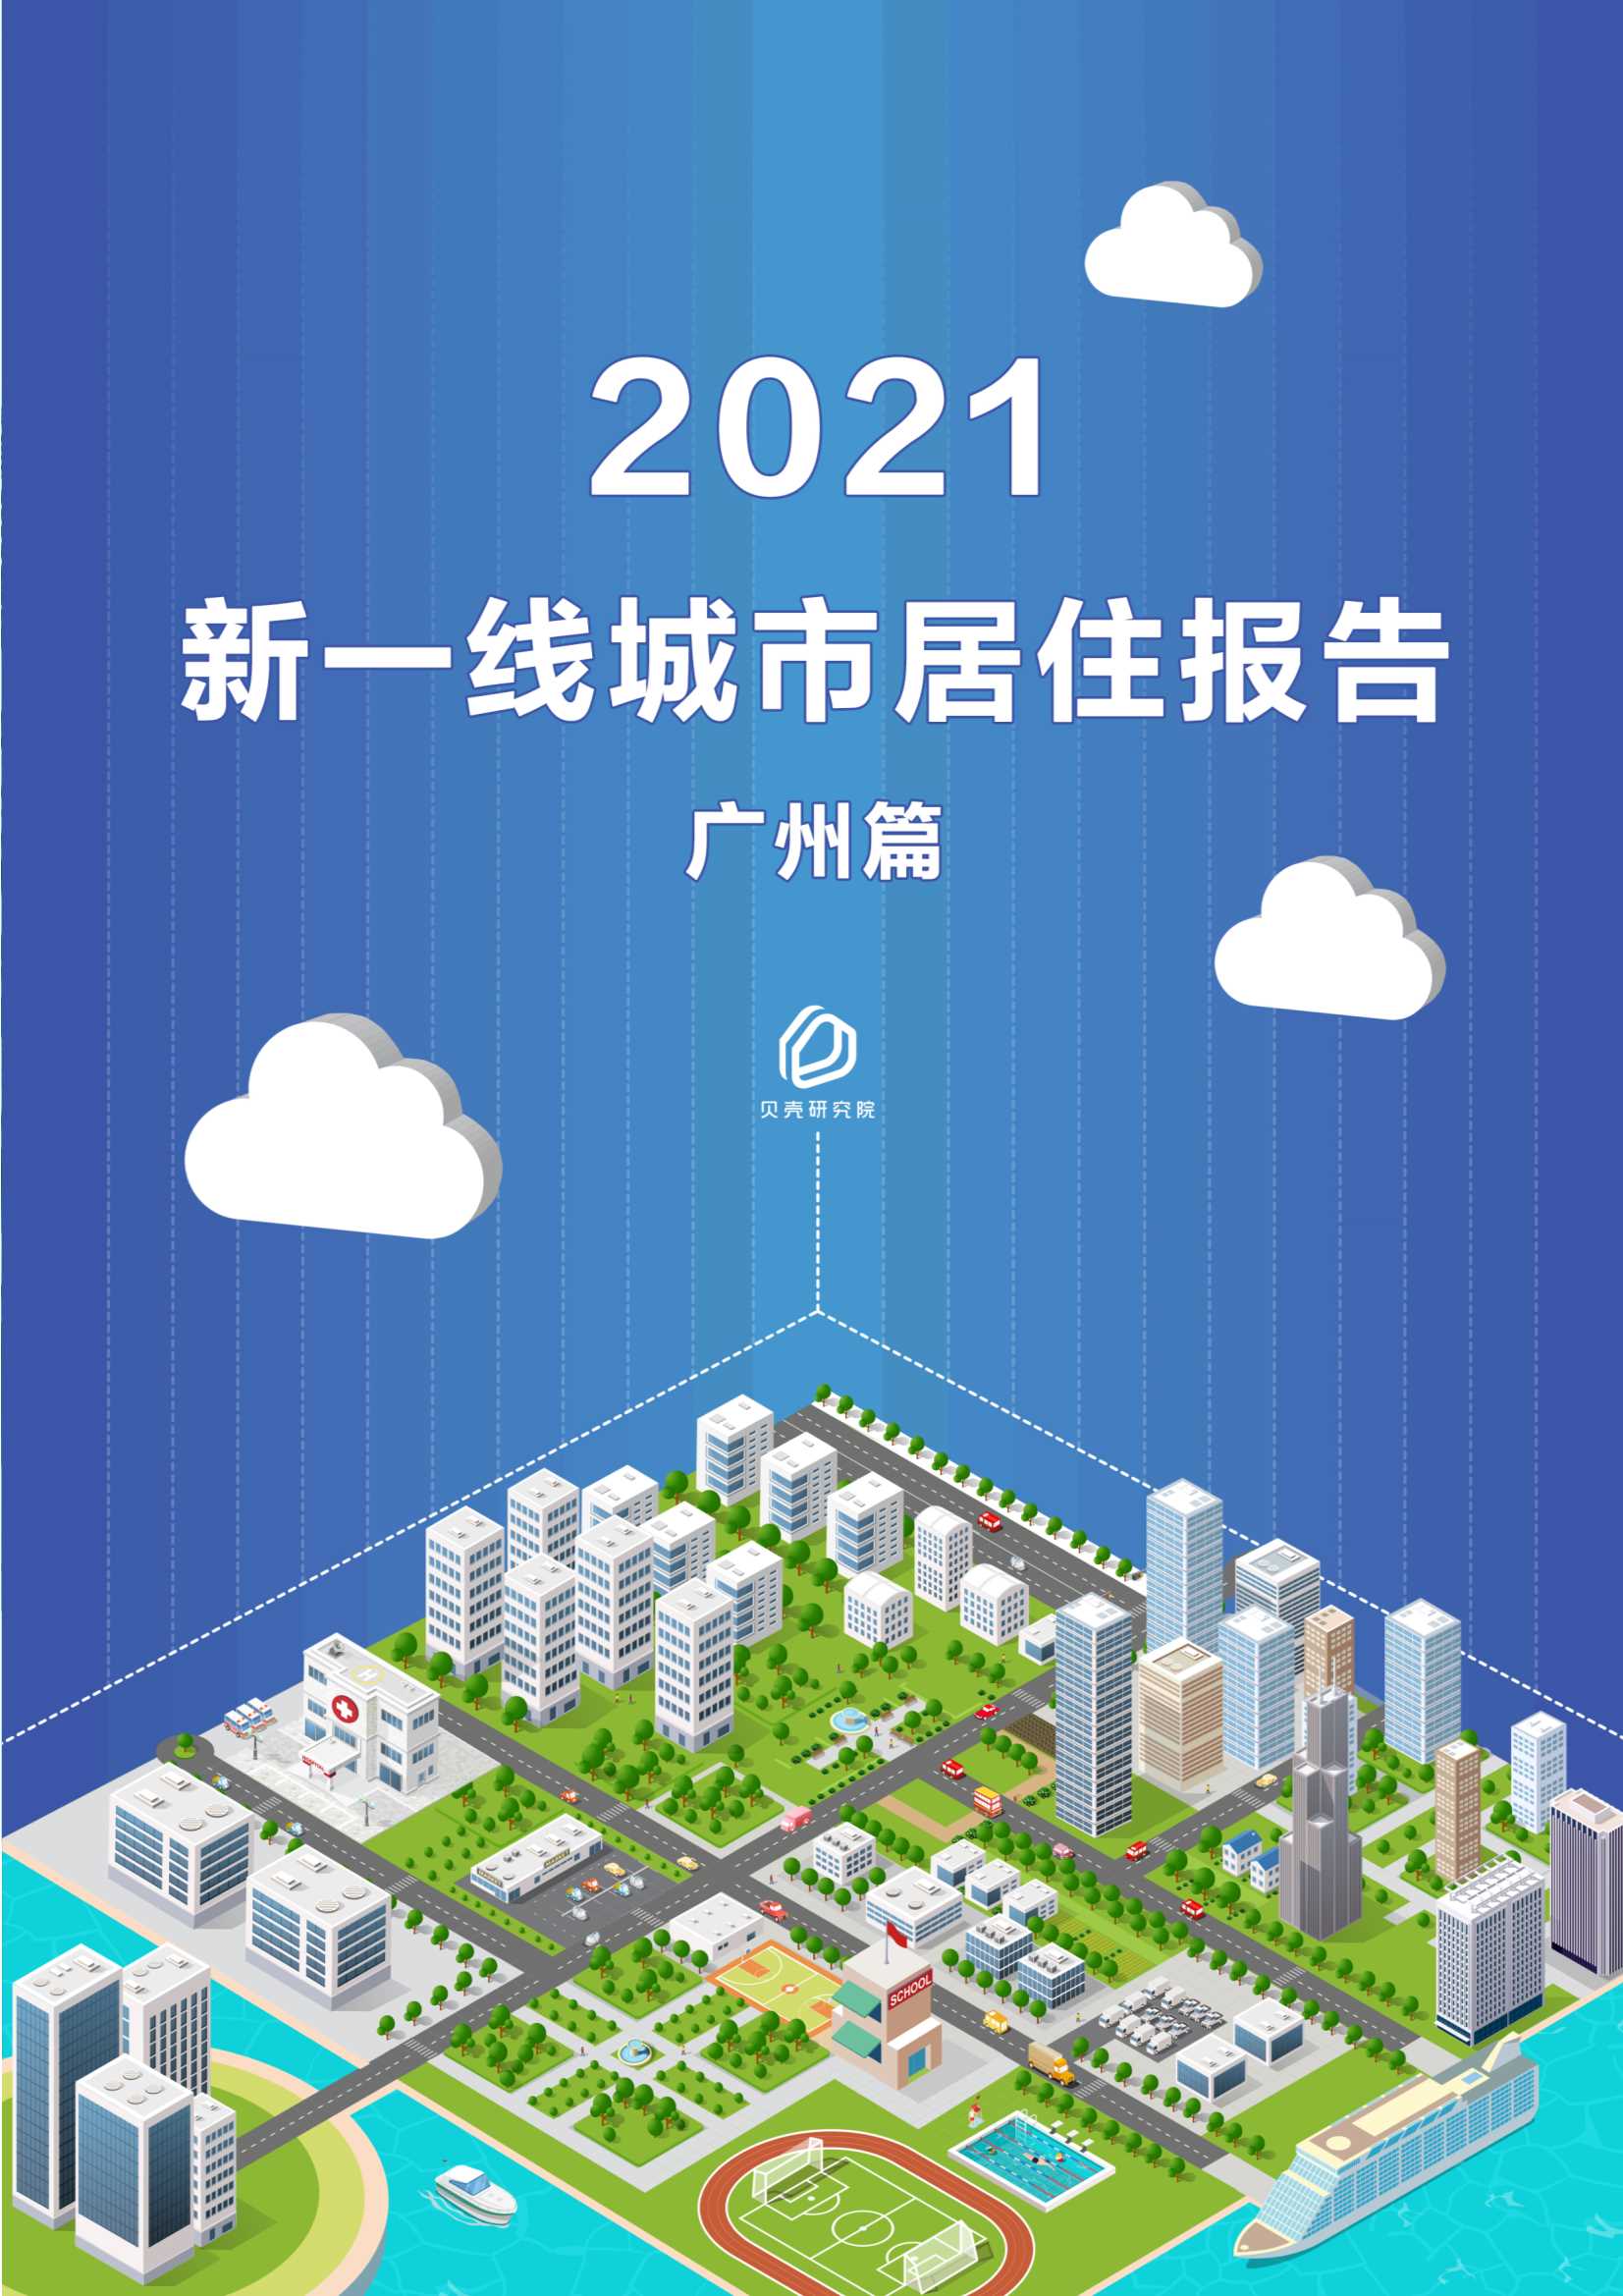 贝壳研究院-新一线城市居住报告广州篇-2021.05-20页